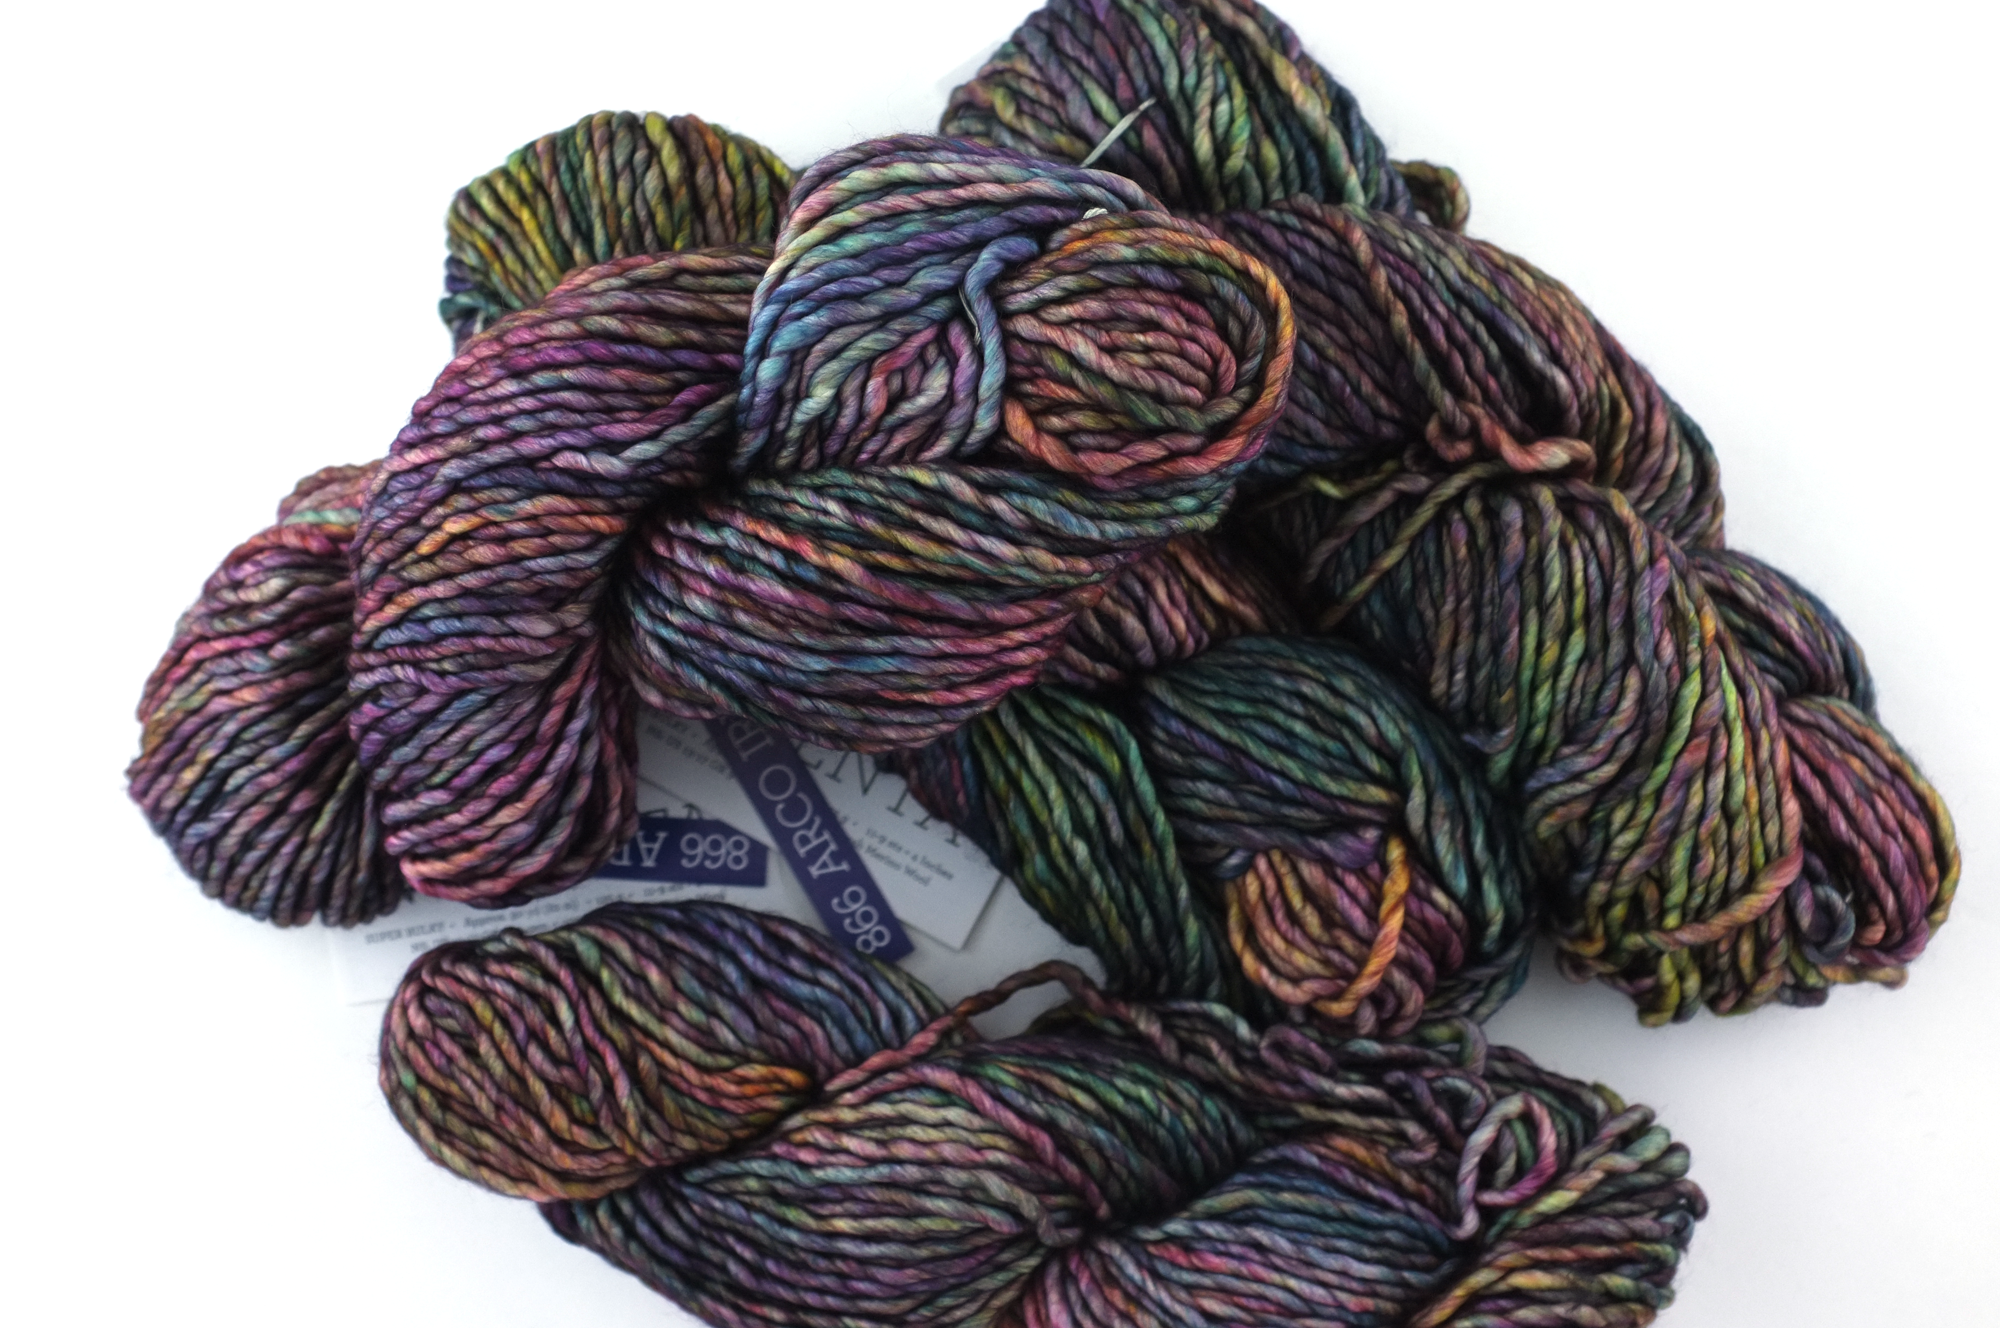 Malabrigo Noventa in color Arco Iris, Merino Wool Super Bulky